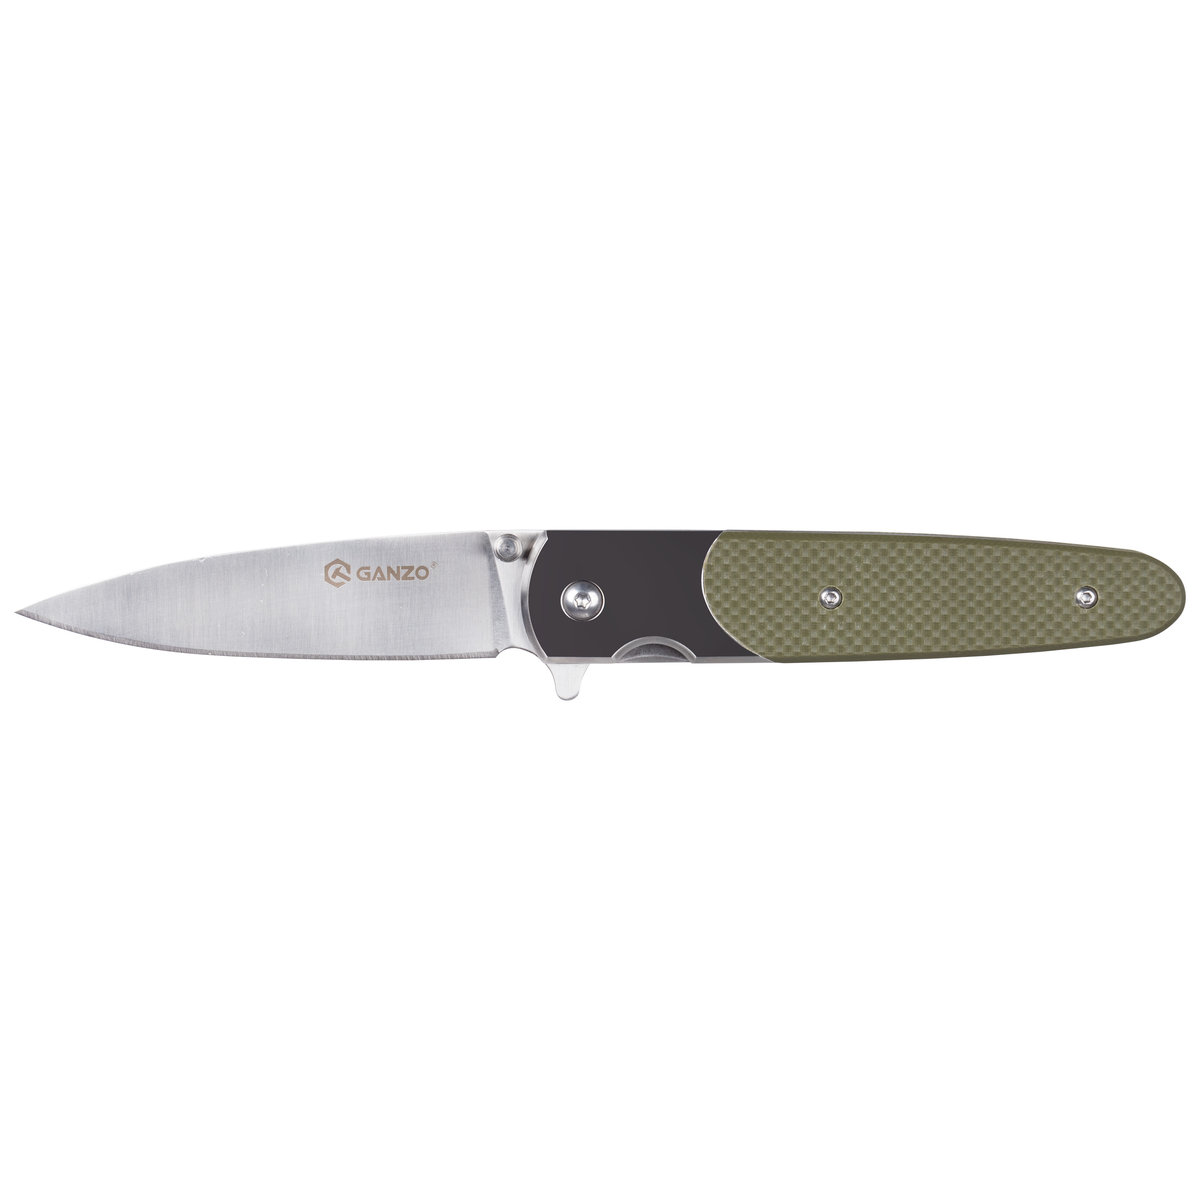 Ganzo GANZO nóż kieszonkowy nóż, szary, jeden rozmiar G743-1-GR